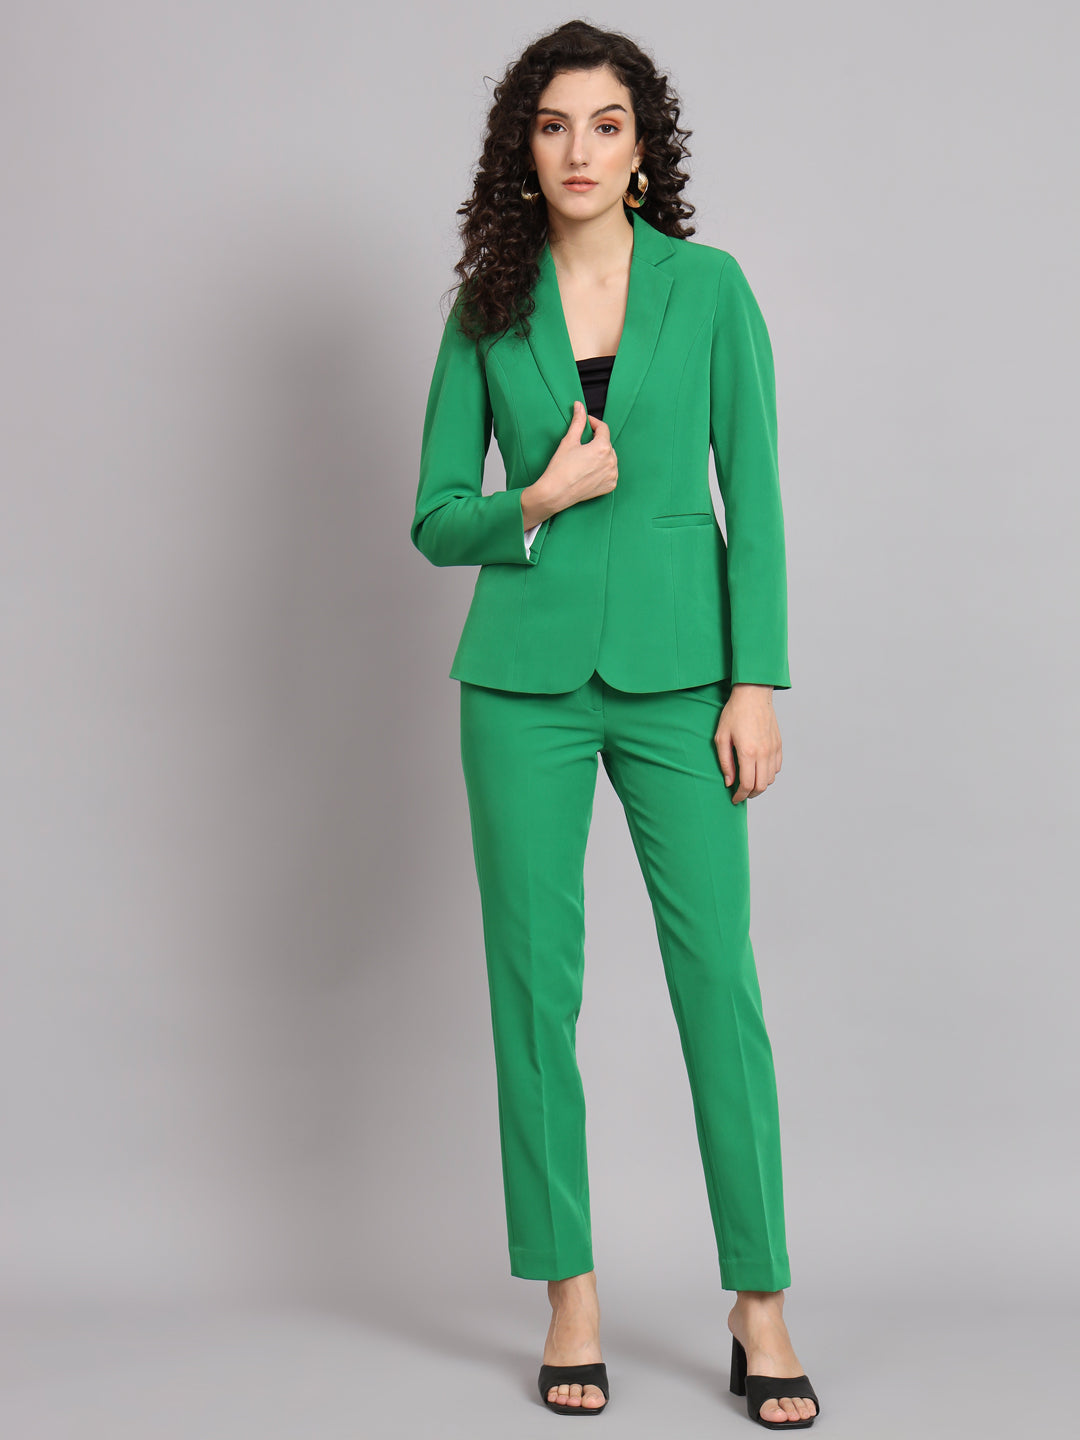 New Pant Suit Design 2020 Partywear || Pant Wale Suit Ke Design || Long  Kurti With Cigarette Pant - YouTube